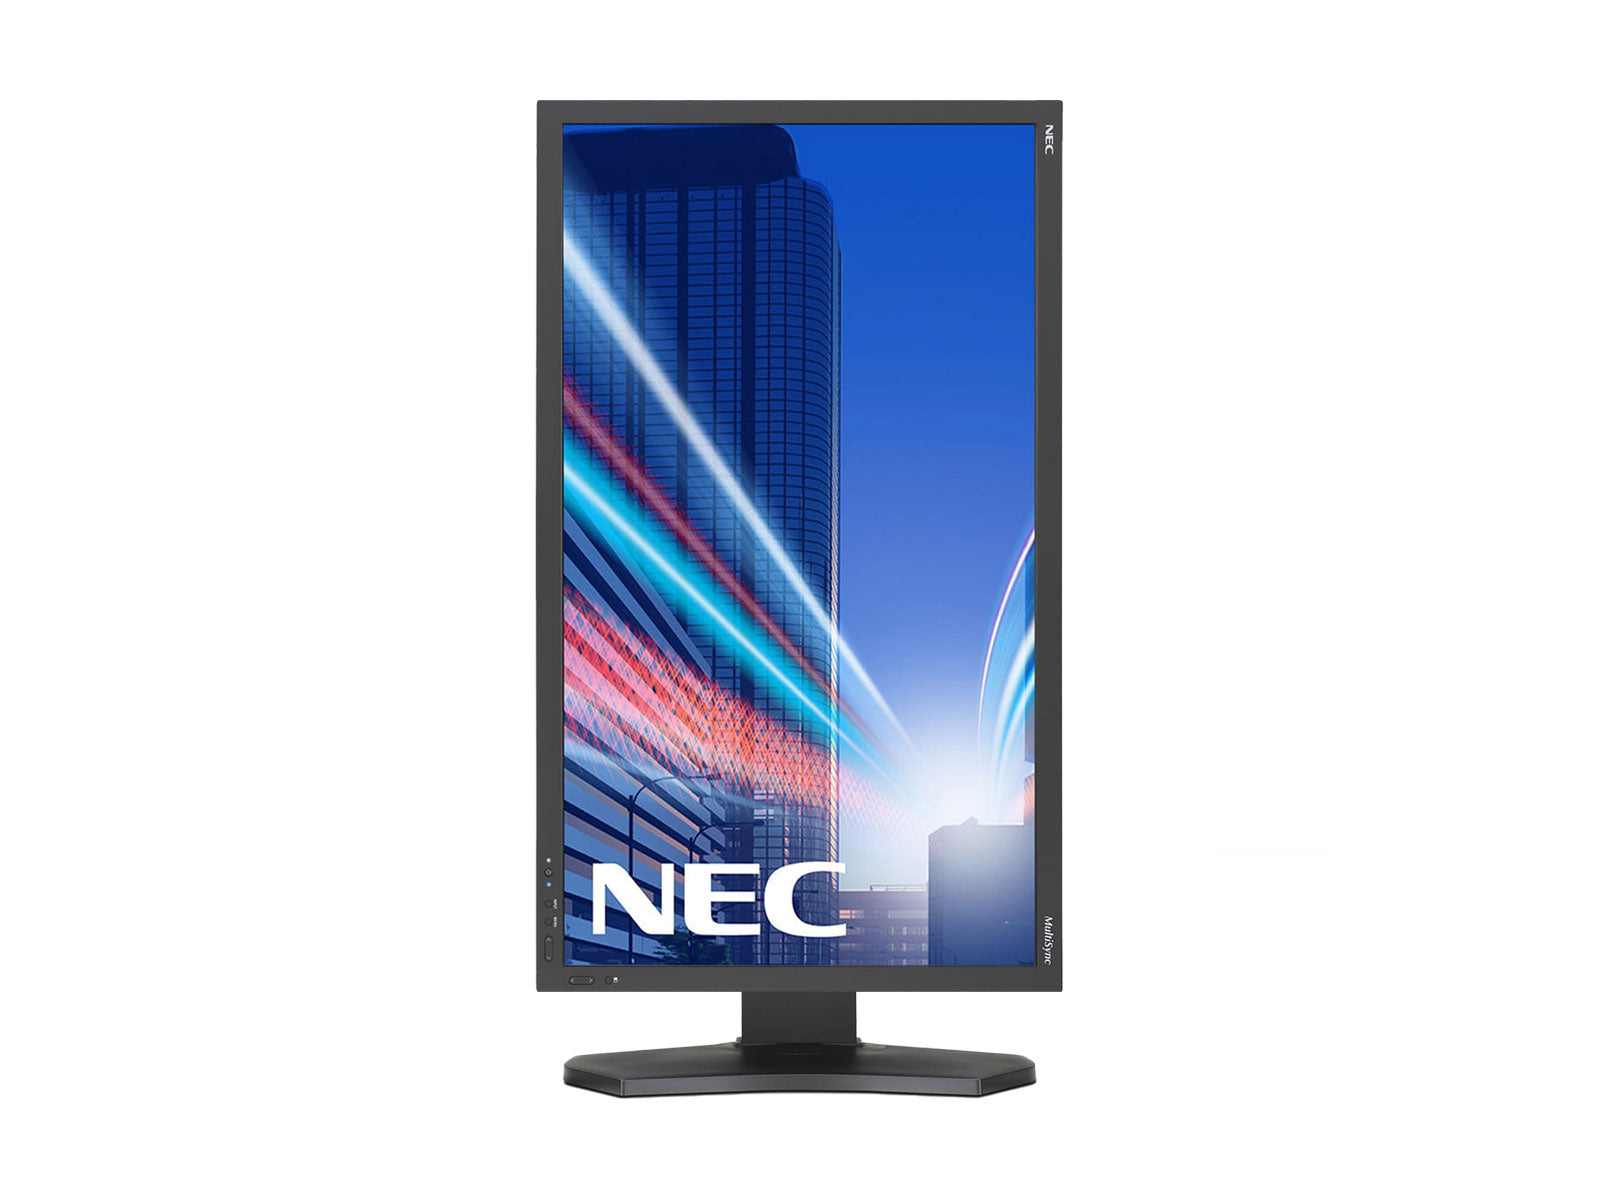 NEC MultiSync PA241W Moniteur graphique professionnel à écran large WUXGA 24" 1920 1200 x 241 XNUMX (PAXNUMXW)